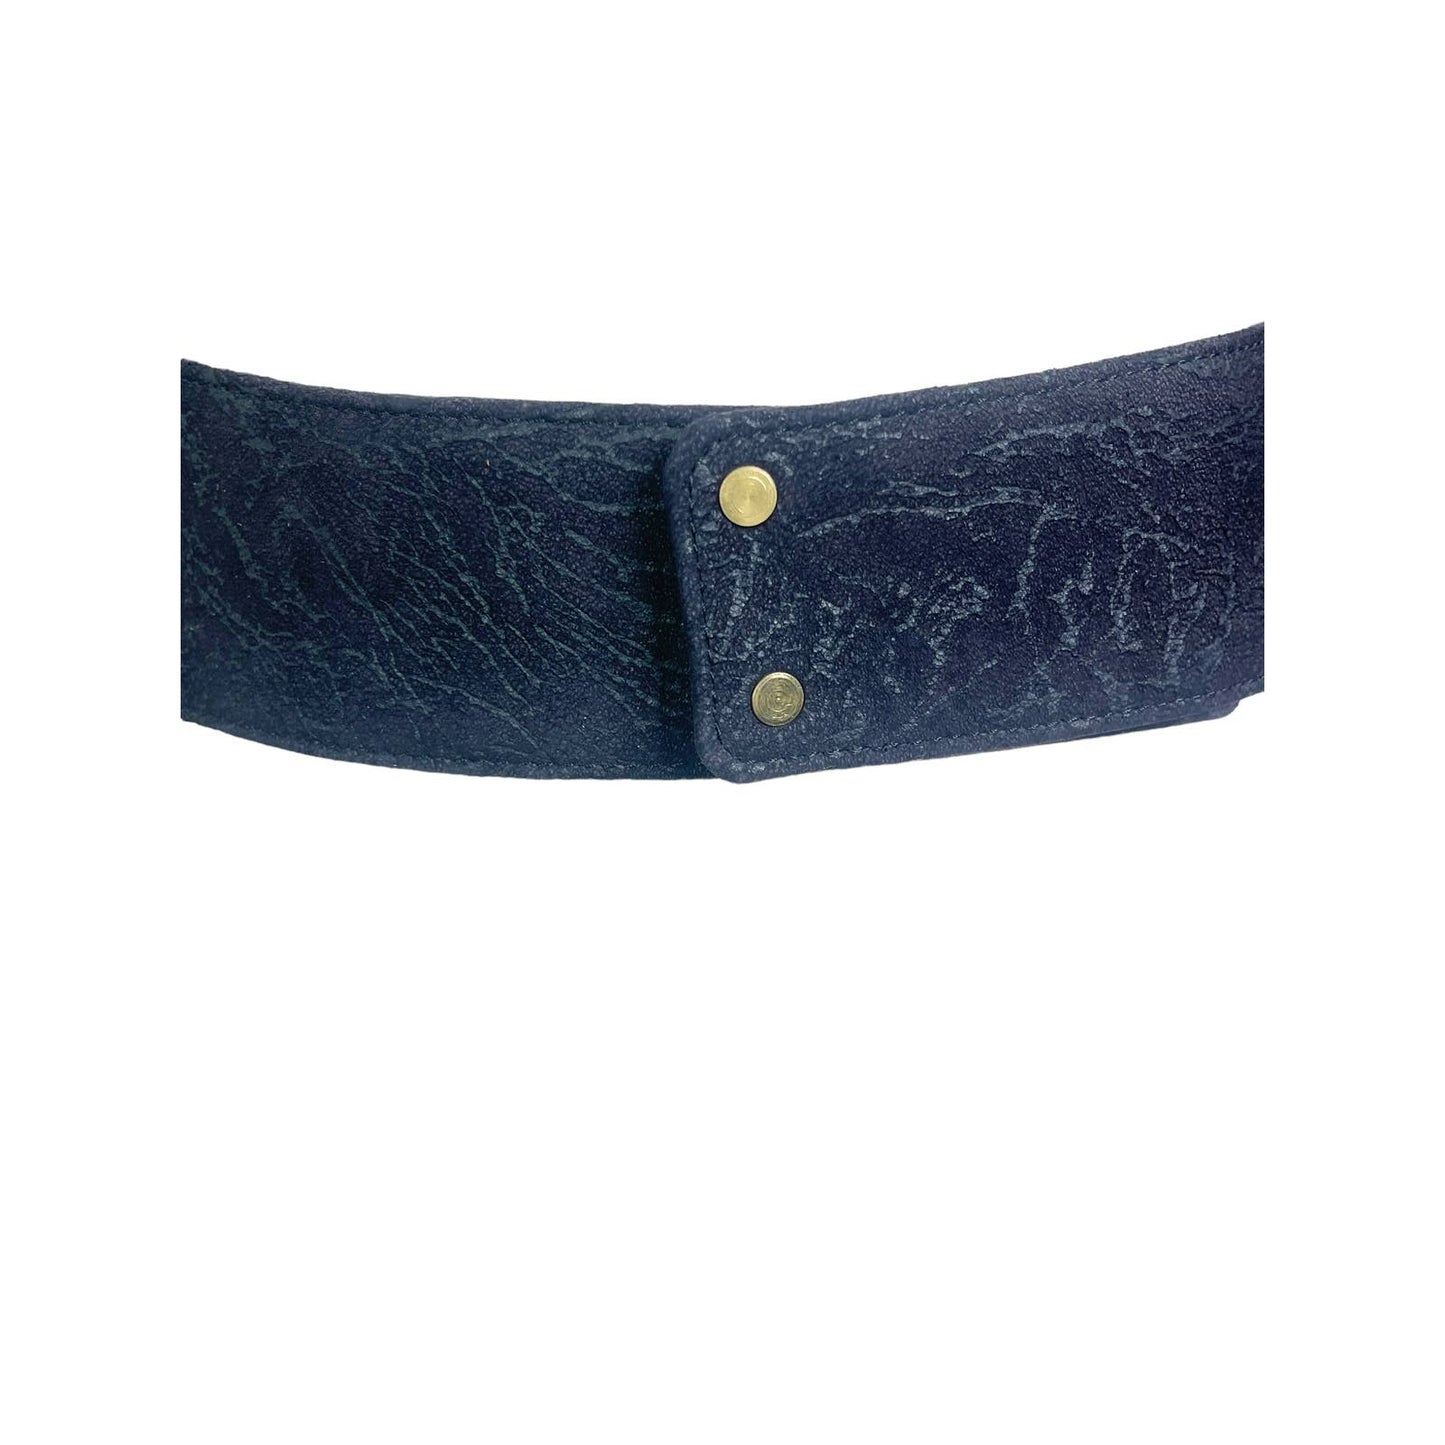 Leo IsbaLeo Isba Vintage 1980's Suede Patchwork Jeweled Leopard Waist Cincher Belt - Black Dog Vintage